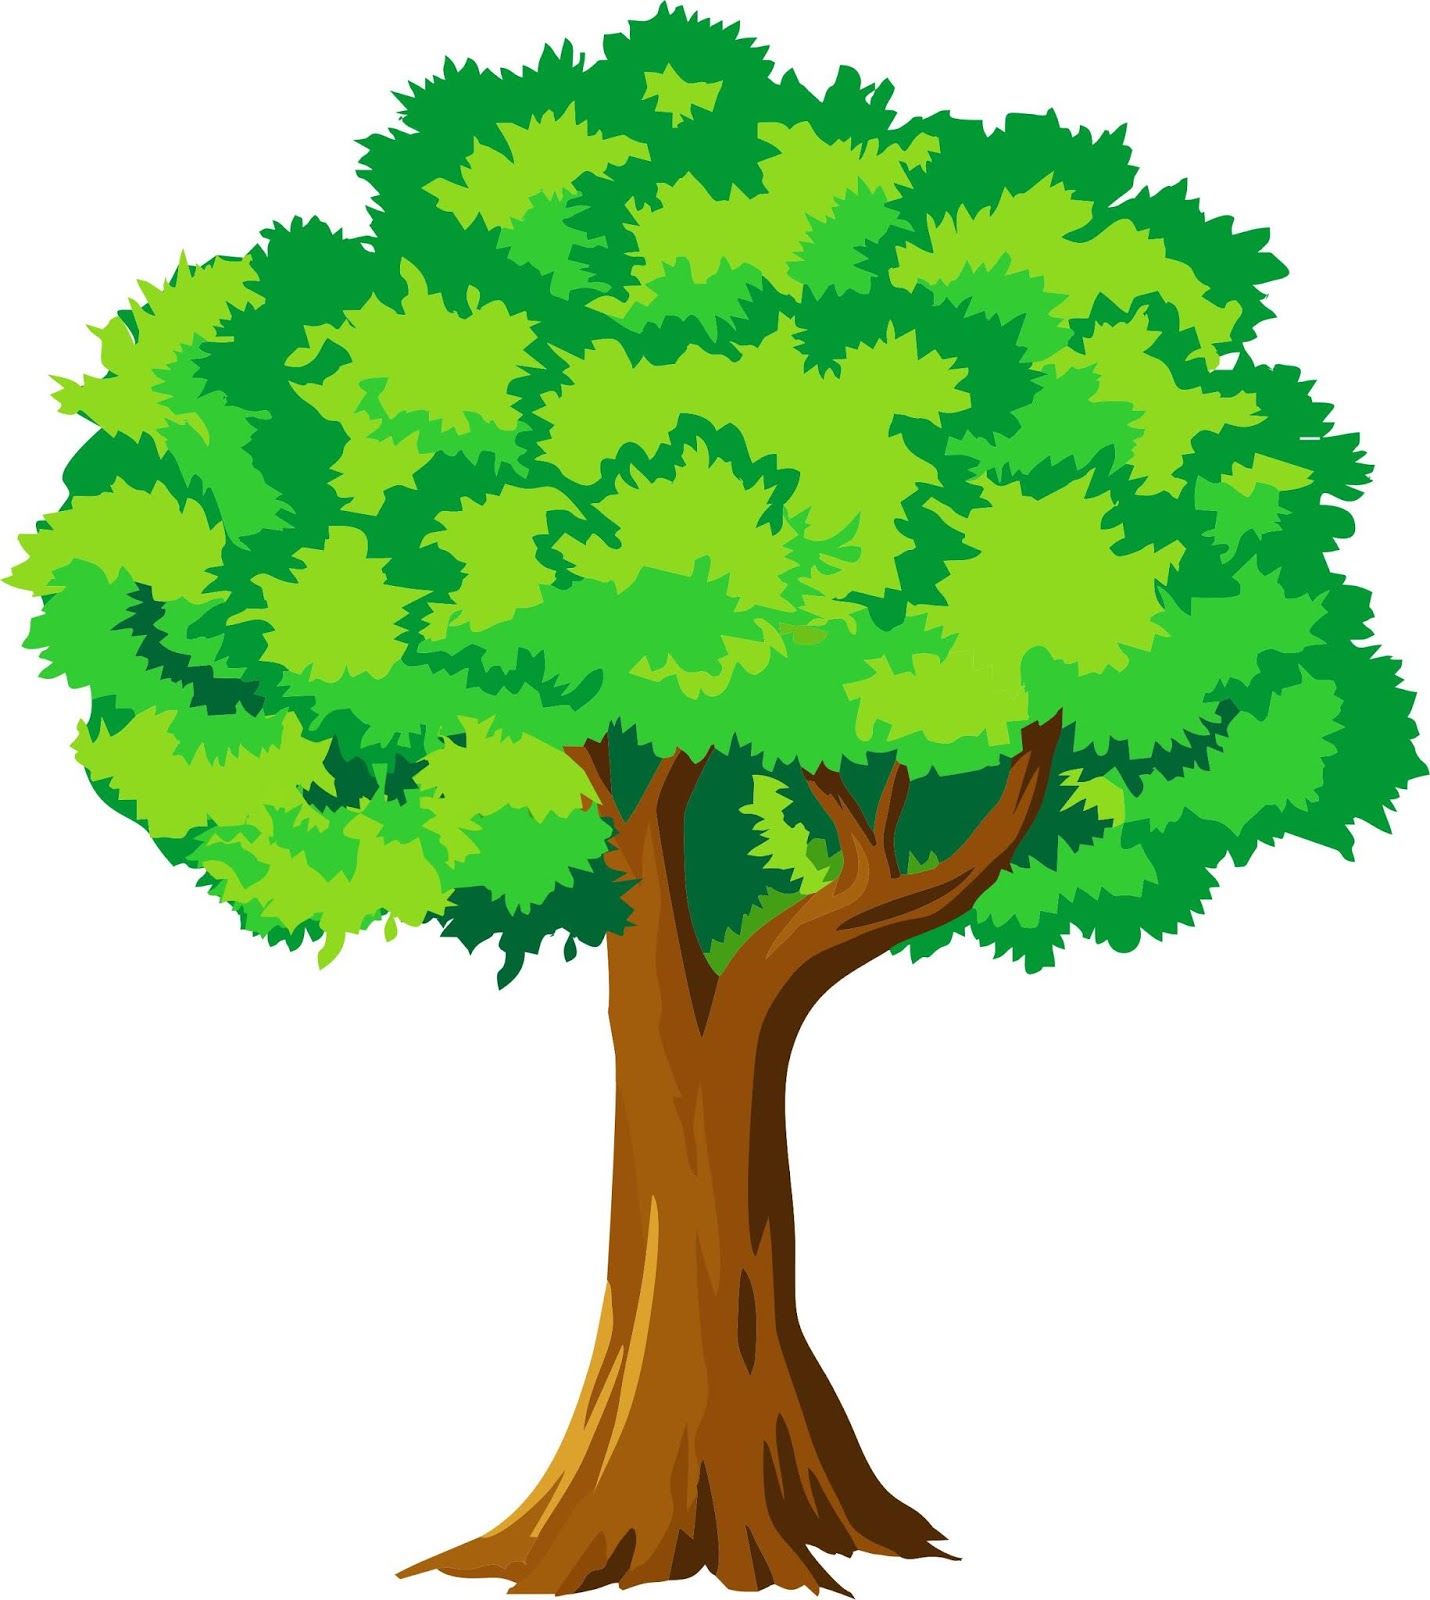  99 Animasi  Batang Pohon  Animasi  Gambar  Pohon  Cikimm com